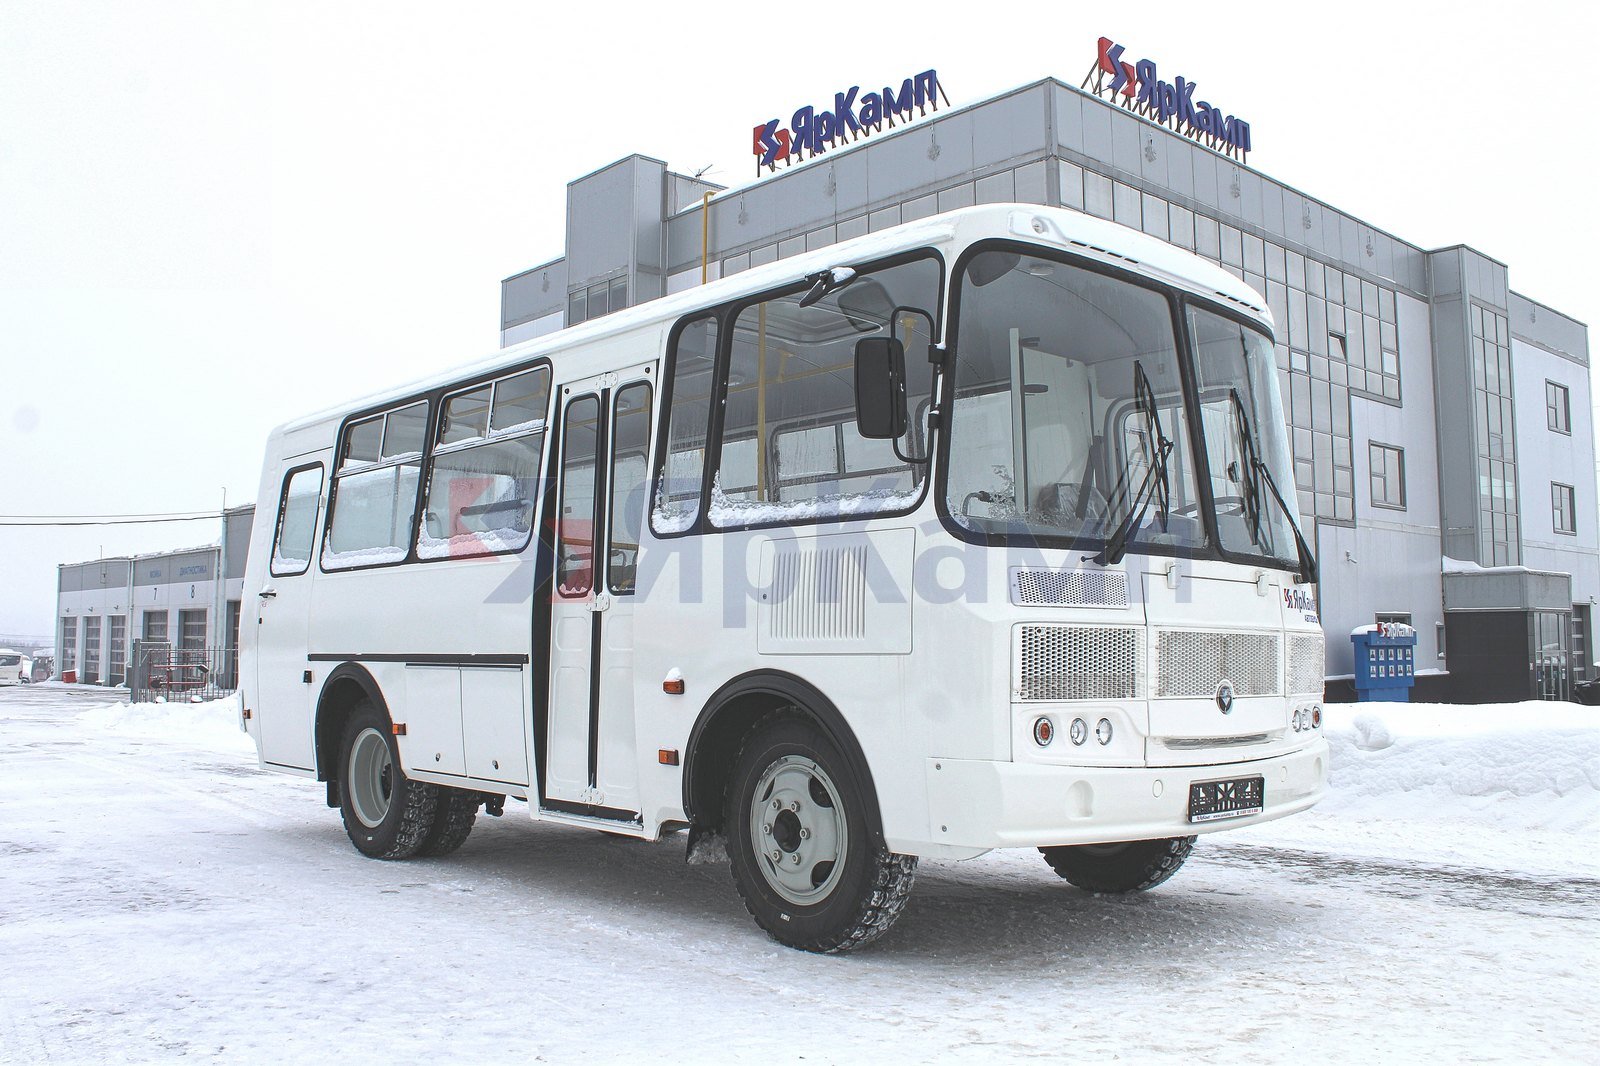 Ритуальный автобус ПАЗ 32053-80